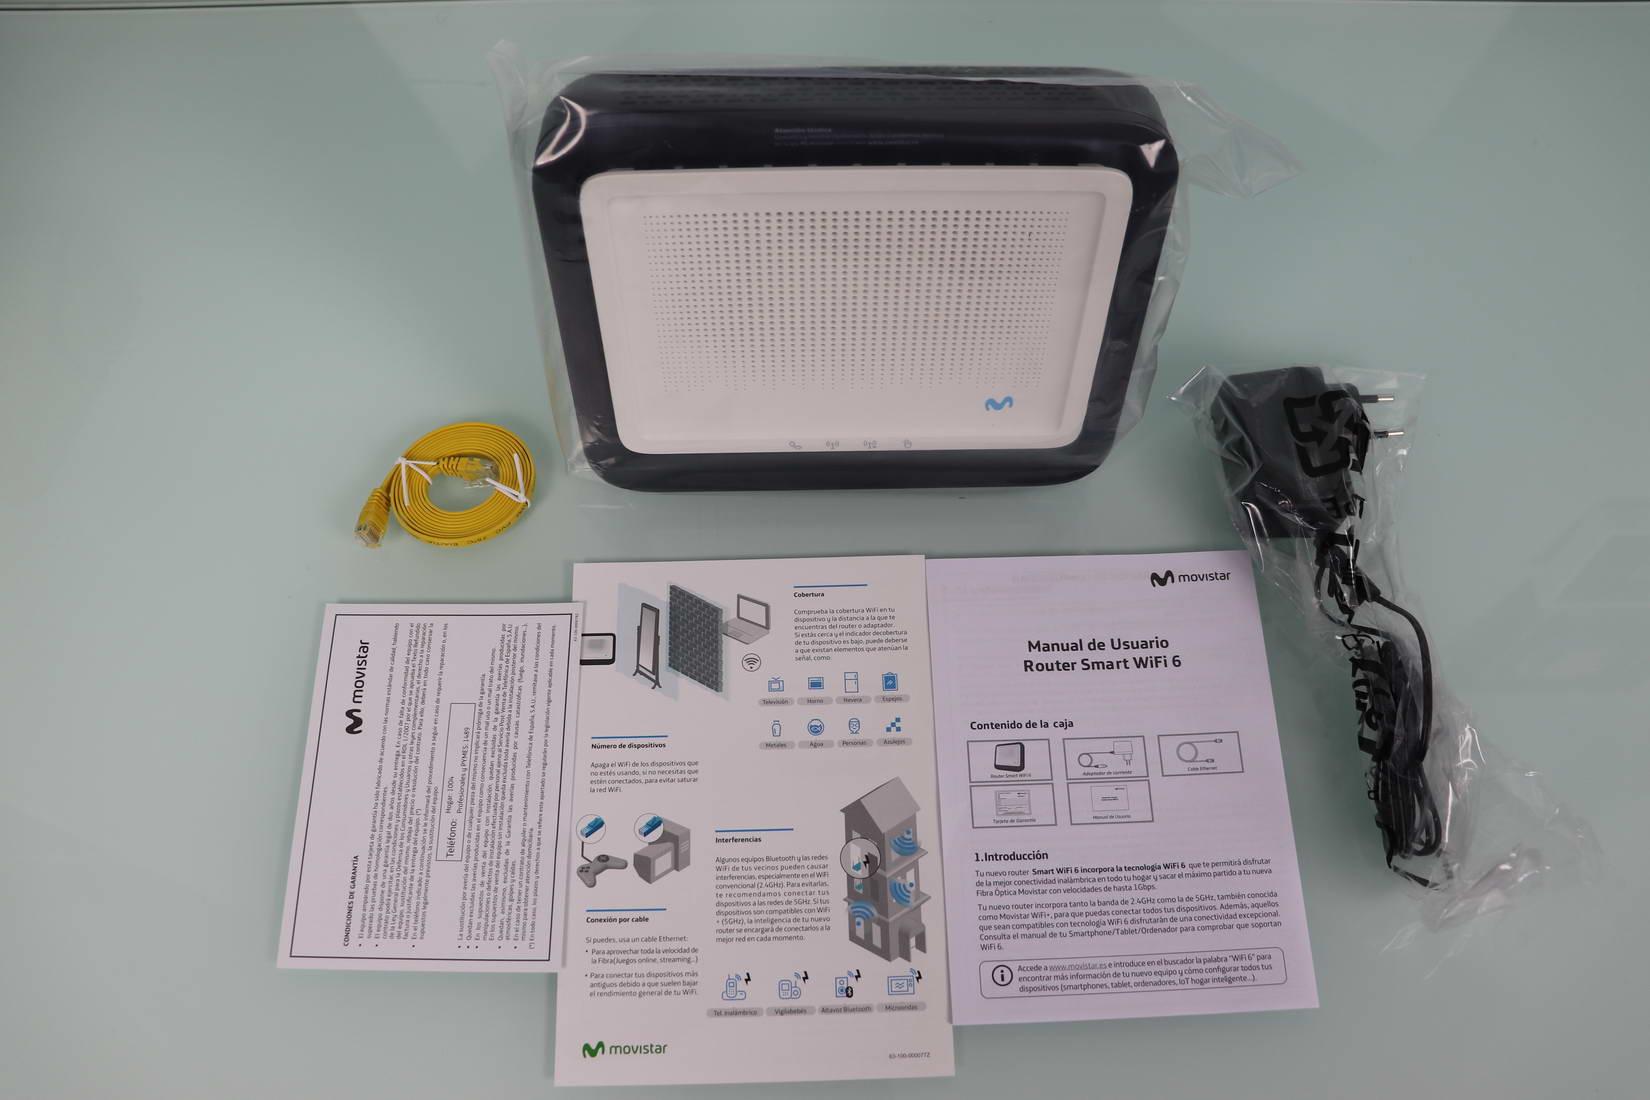 Contenido de la caja del Movistar Router Smart WiFi 6 con documentación y accesorios